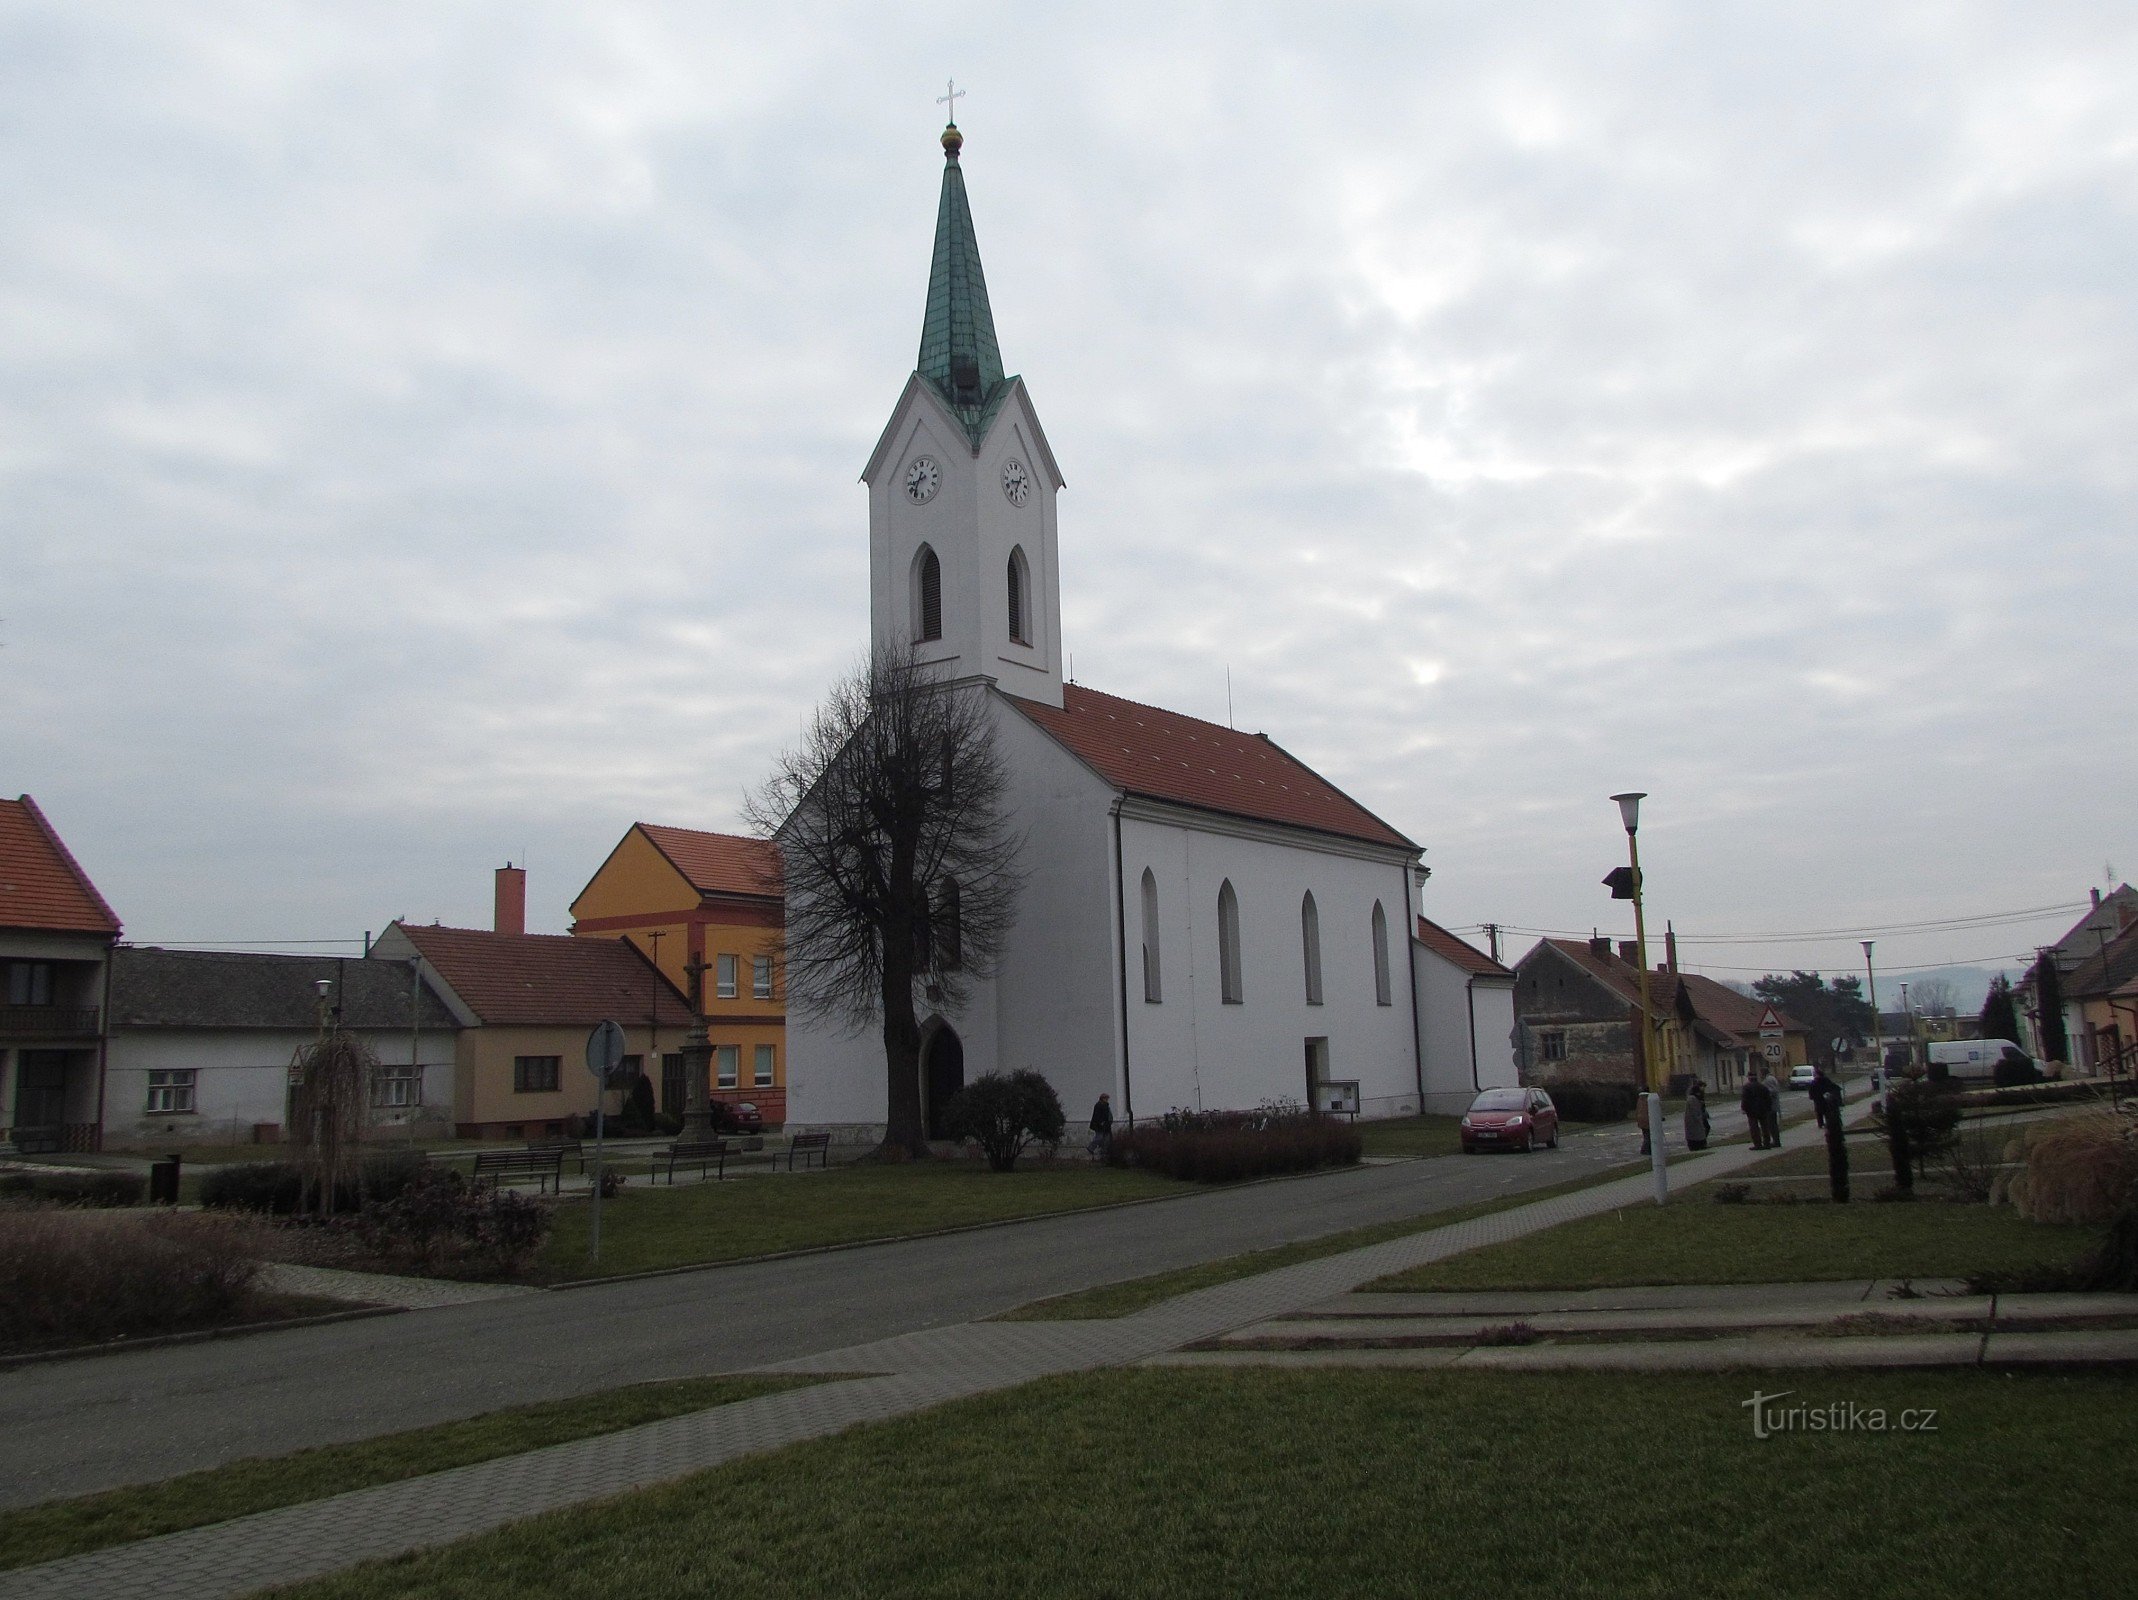 St.-Anna-Kirche